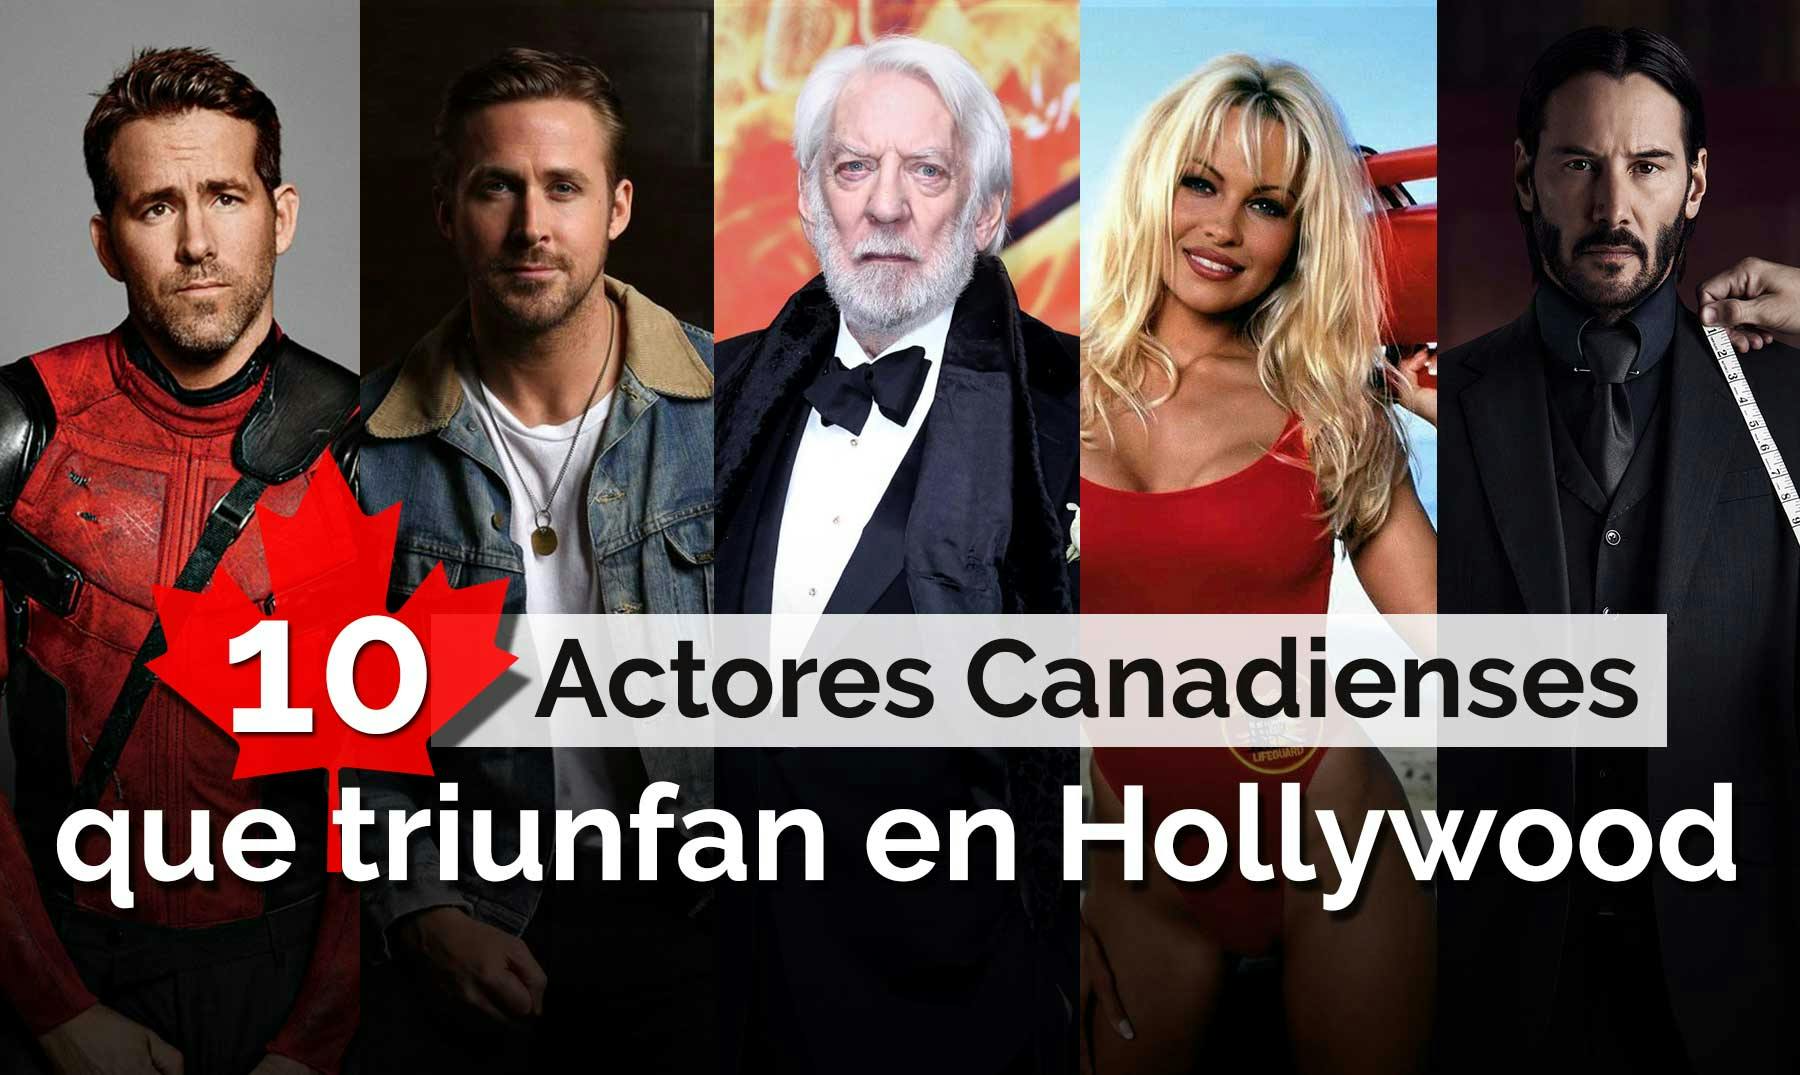 Los 10 actores canadienses más famosos de Hollywood